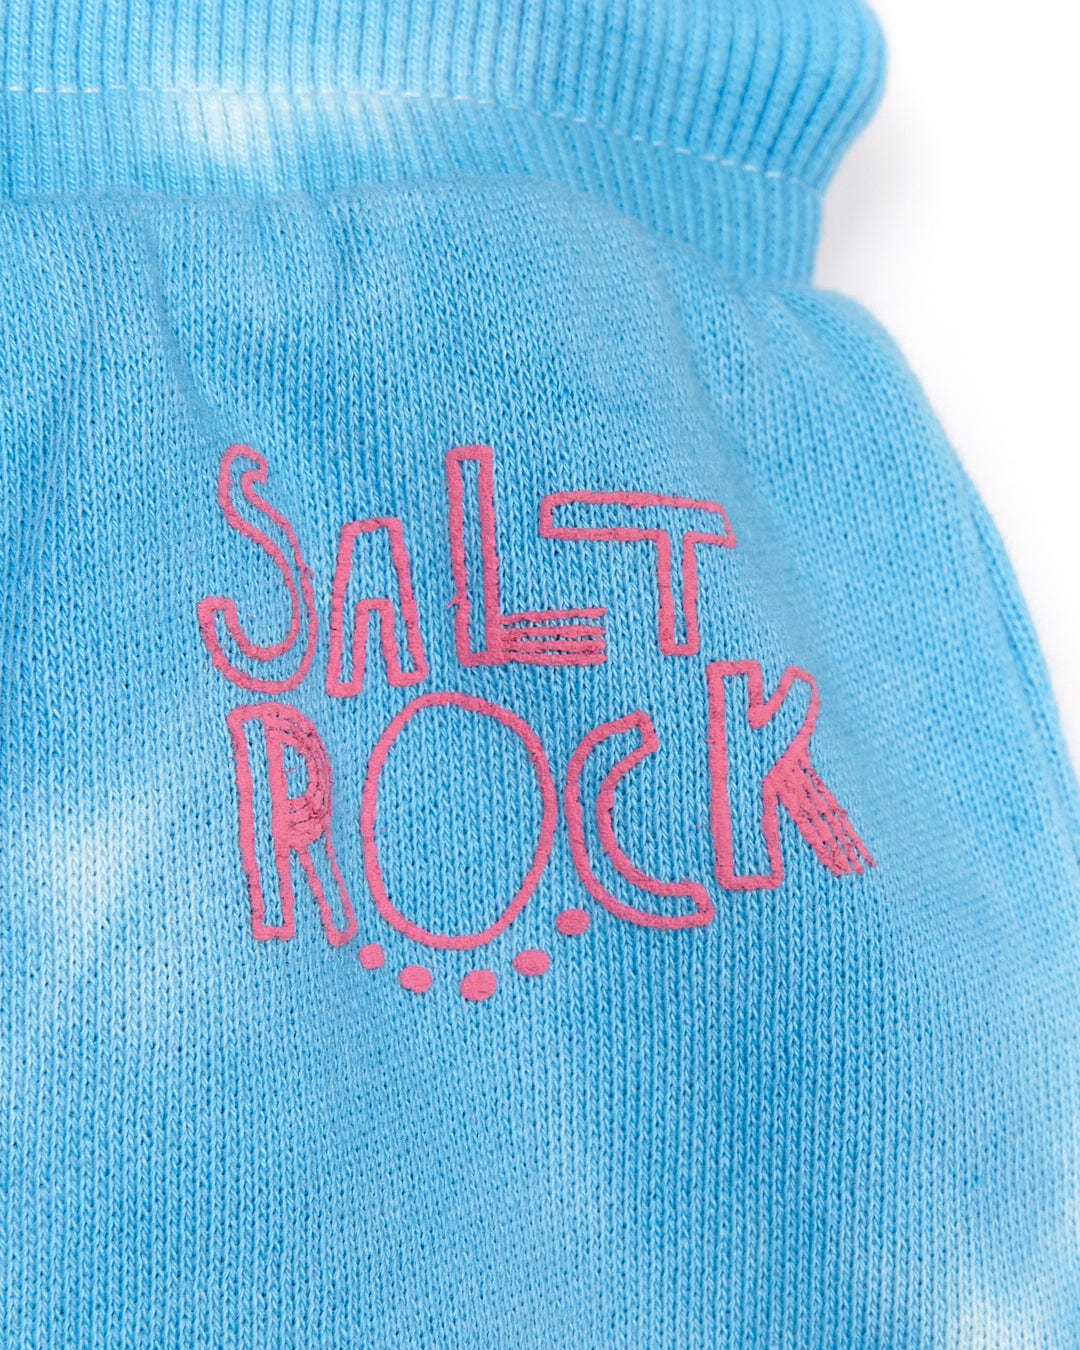 The Coralia - Kids Tie Dye Sweat Short - Pink by Saltrock in blue.